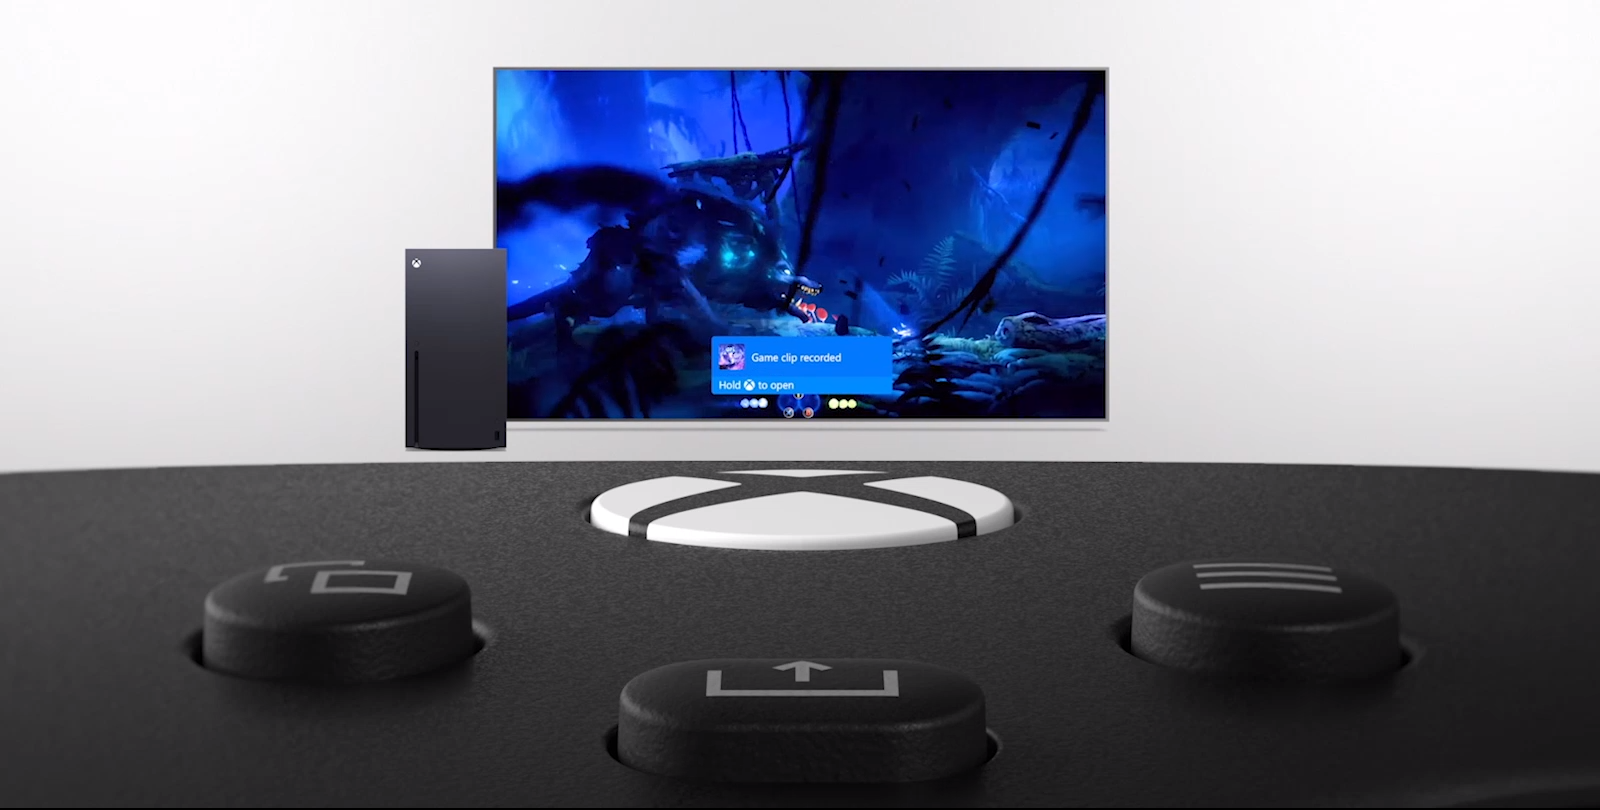 Tay cầm chơi game Xbox Series X Controller - Robot White tích hợp nút Share chuyên dụng